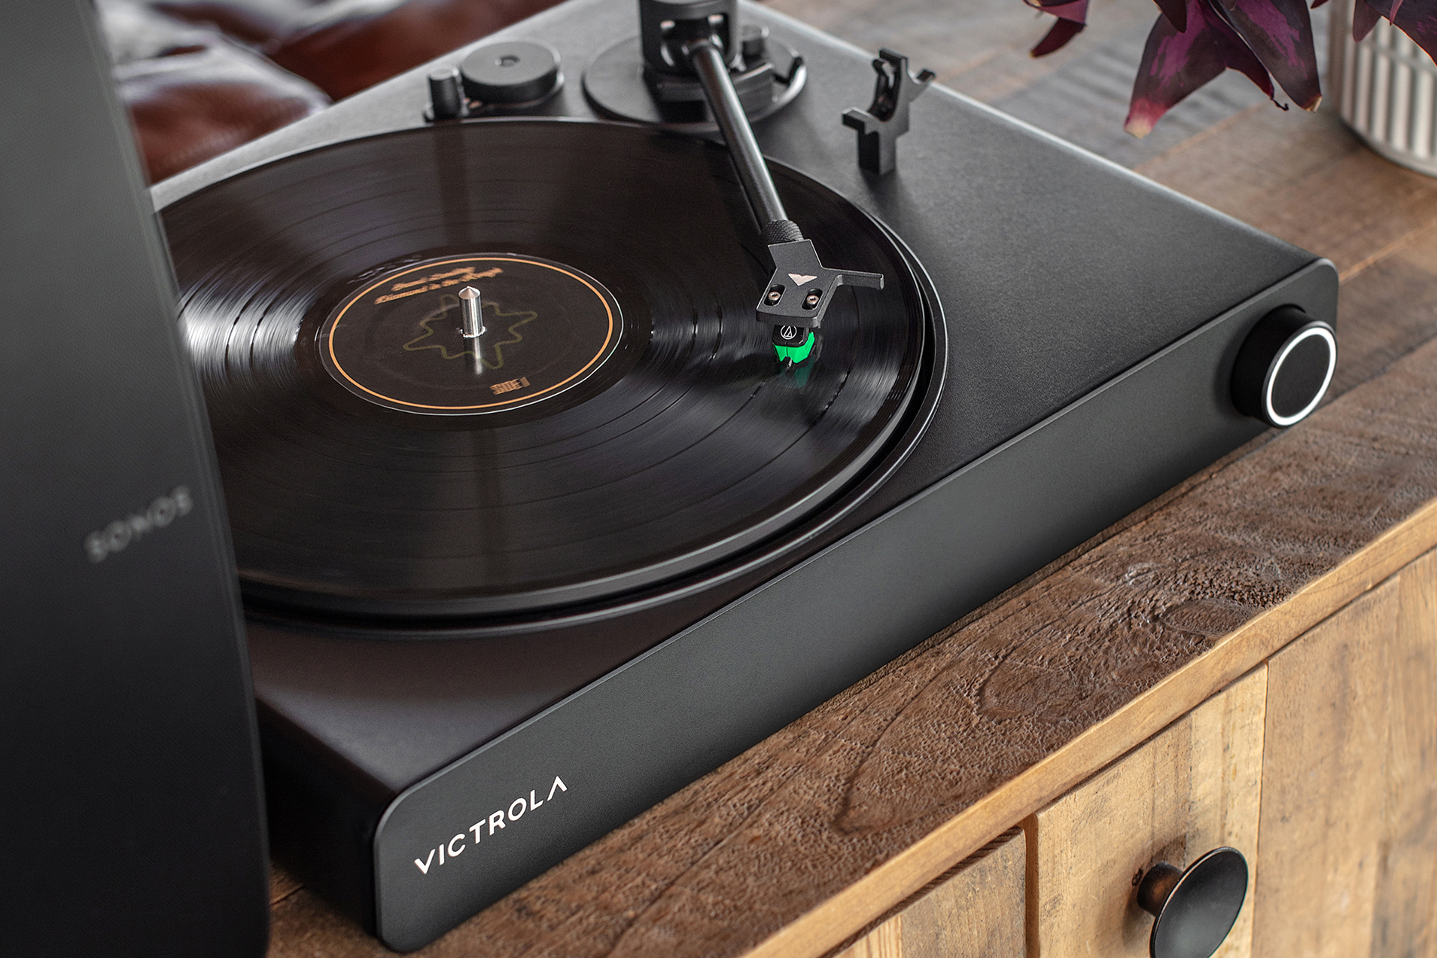 O toca-discos pronto para Vitrola Stream Onyx Sonos em um armário de madeira.